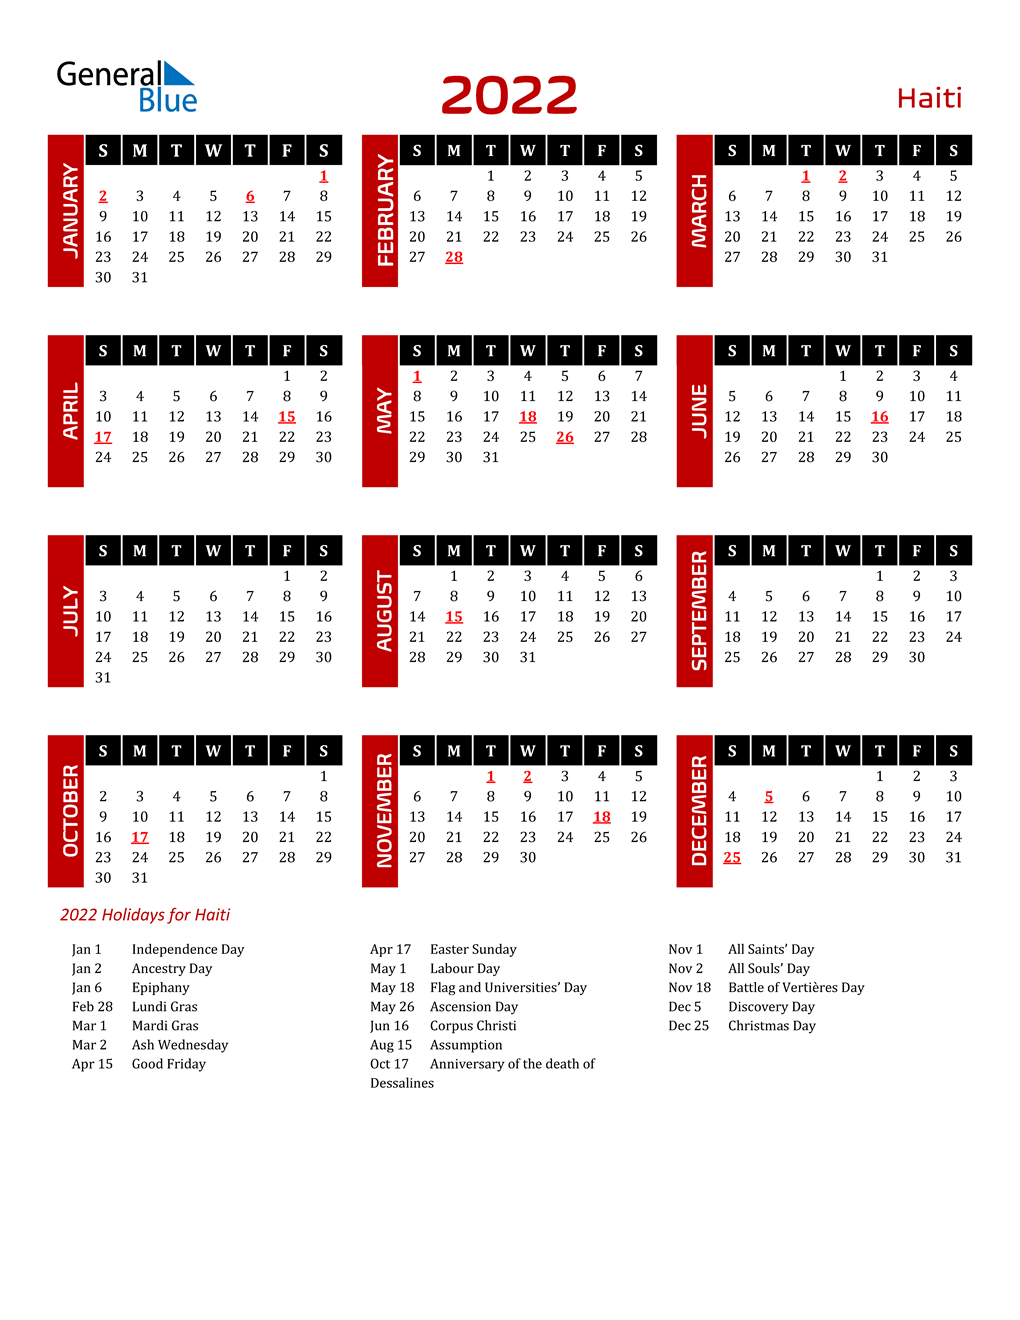 Download Haiti 2022 Calendar